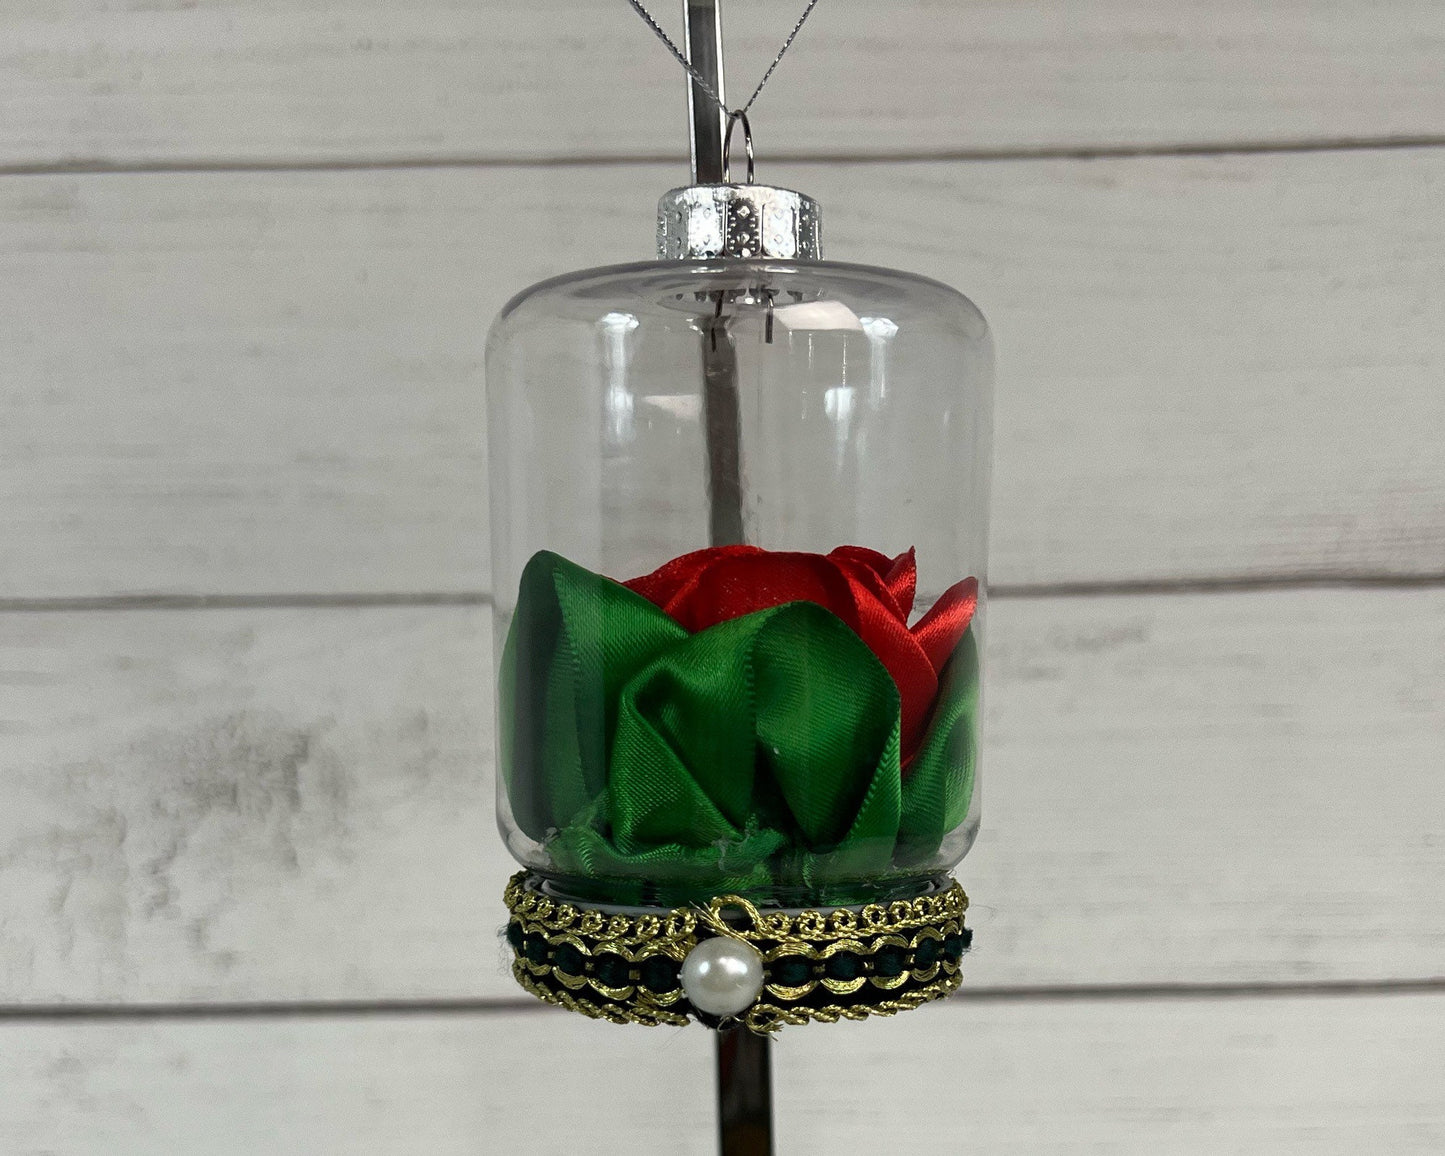 Ribbon Rose Ornament - Handmade - Red Rose - Beautiful Tree Ornament - Christmas - Christmas Tree - Gift Ideas - Teacher - Stocking Stuffer